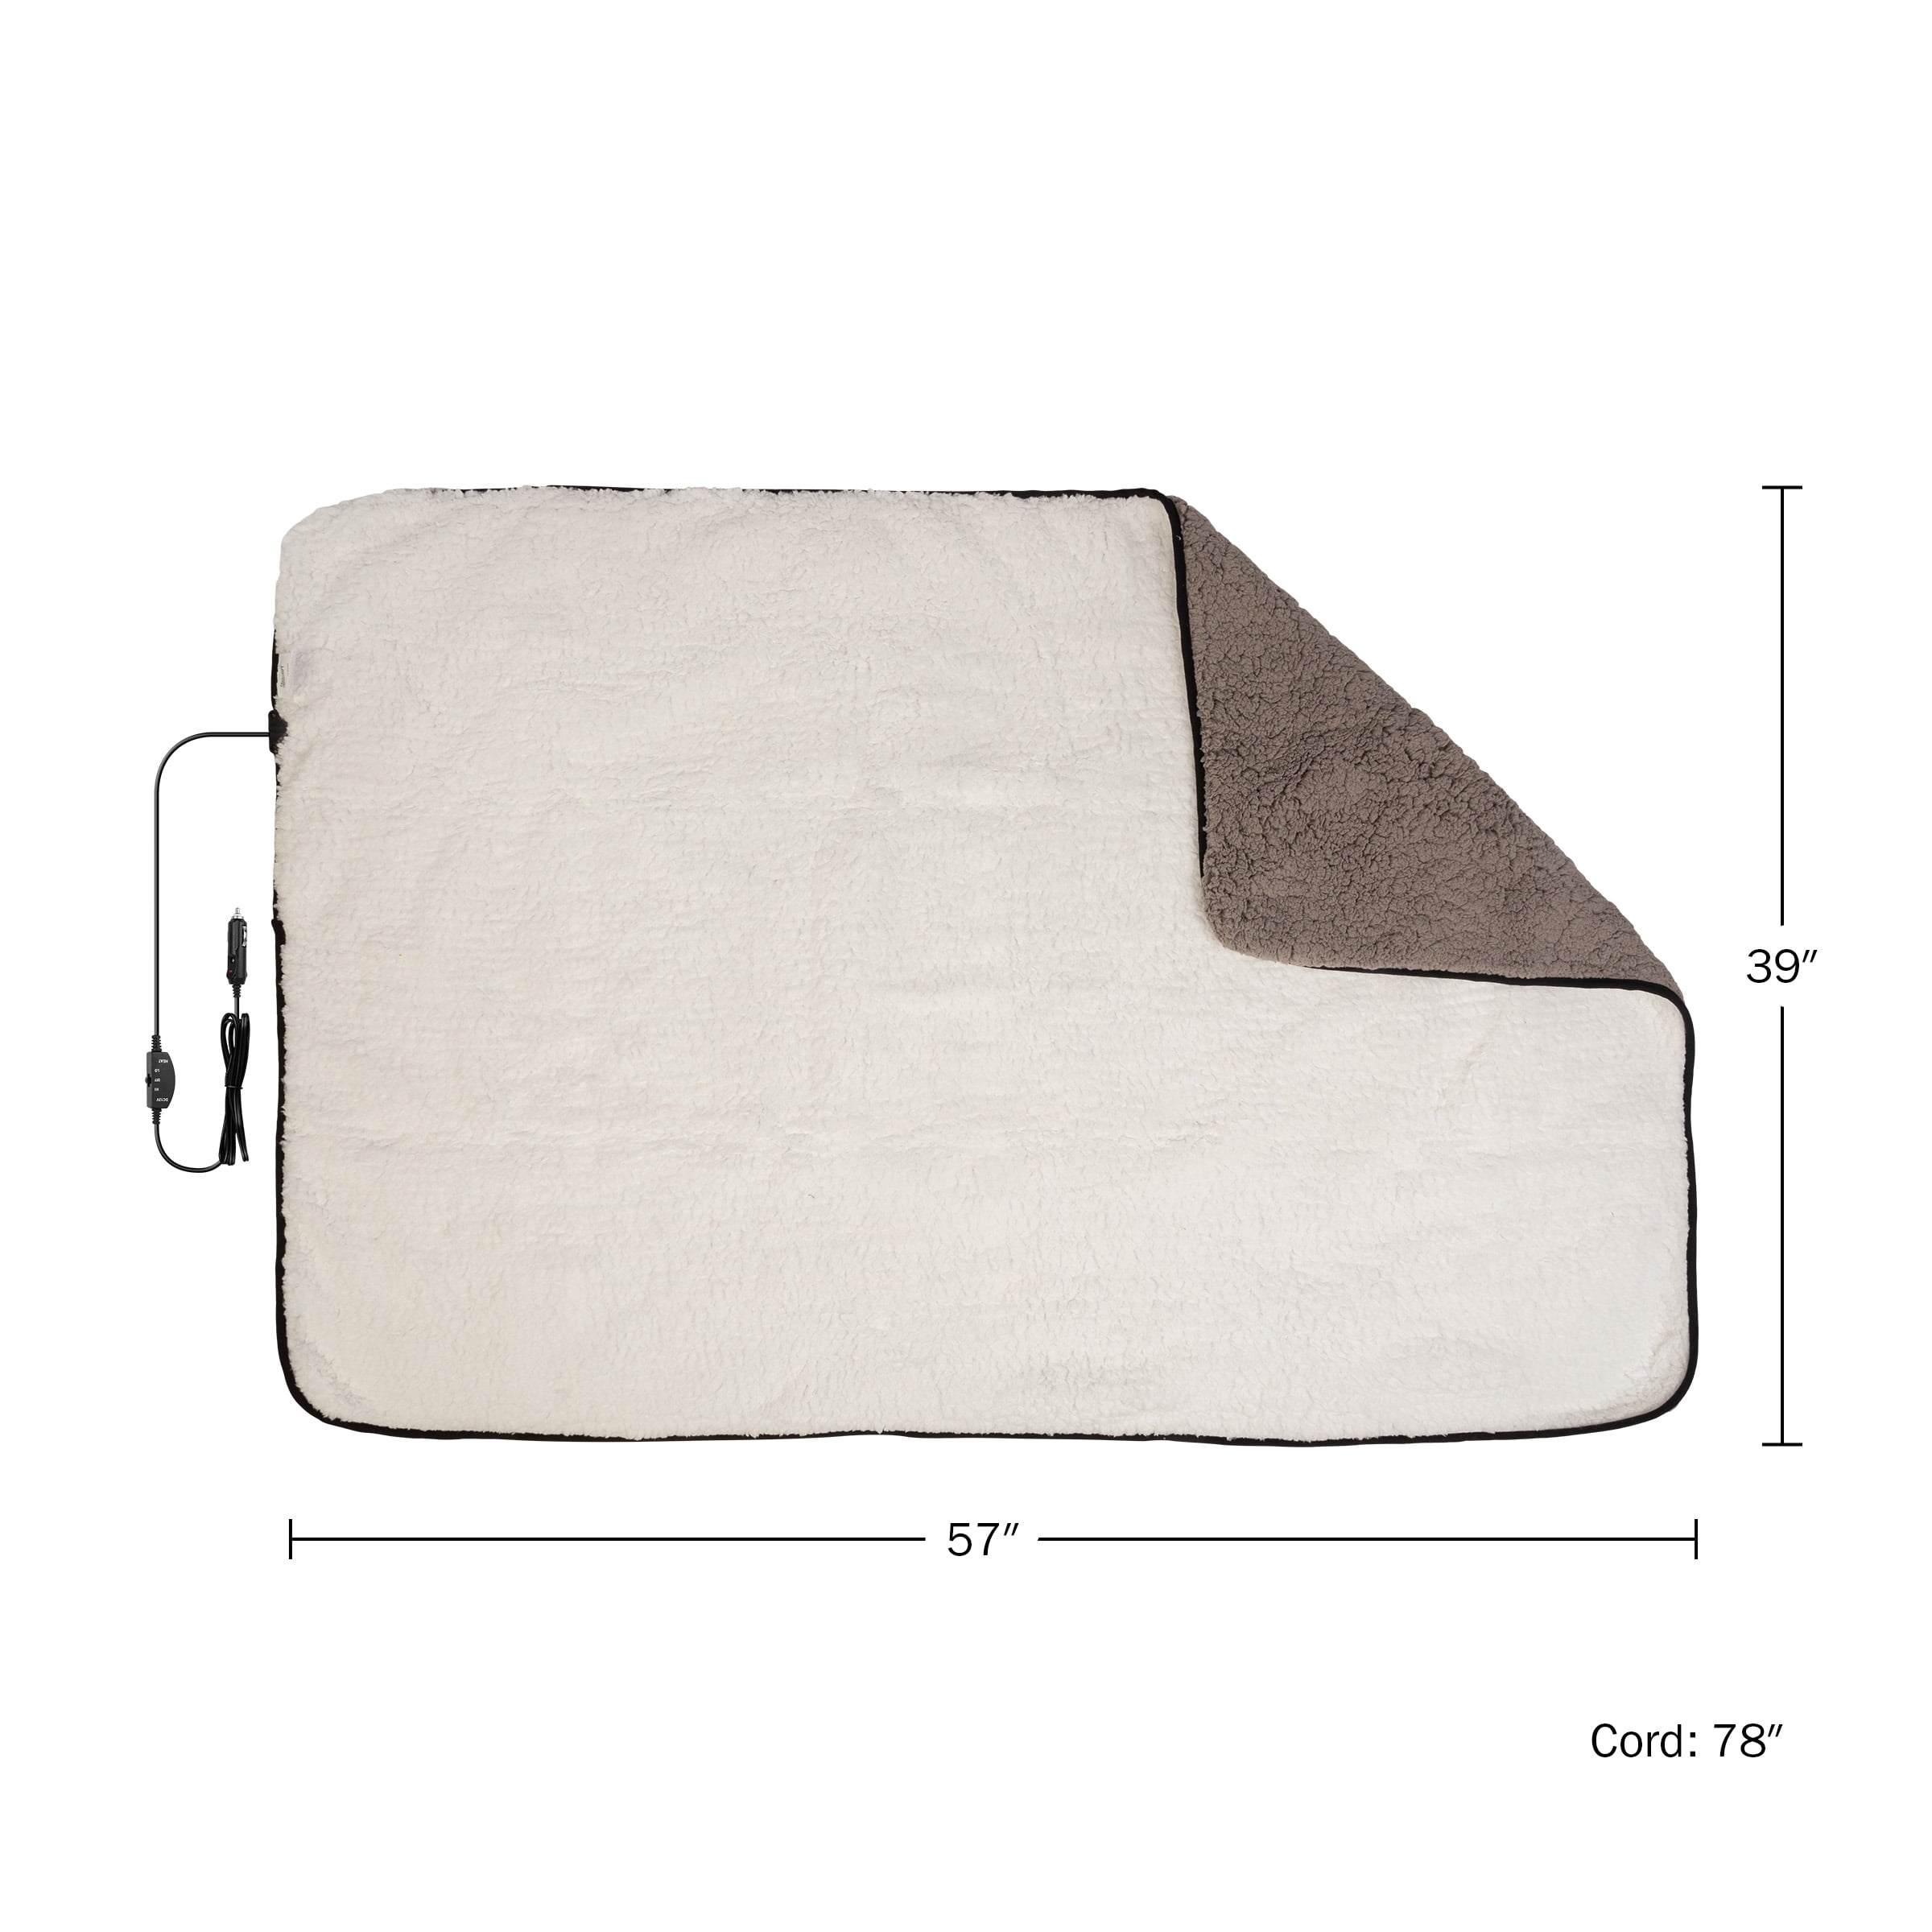 Stalwart Heated Blanket 2-Pack - 12V Car Blankets for Travel, Gray